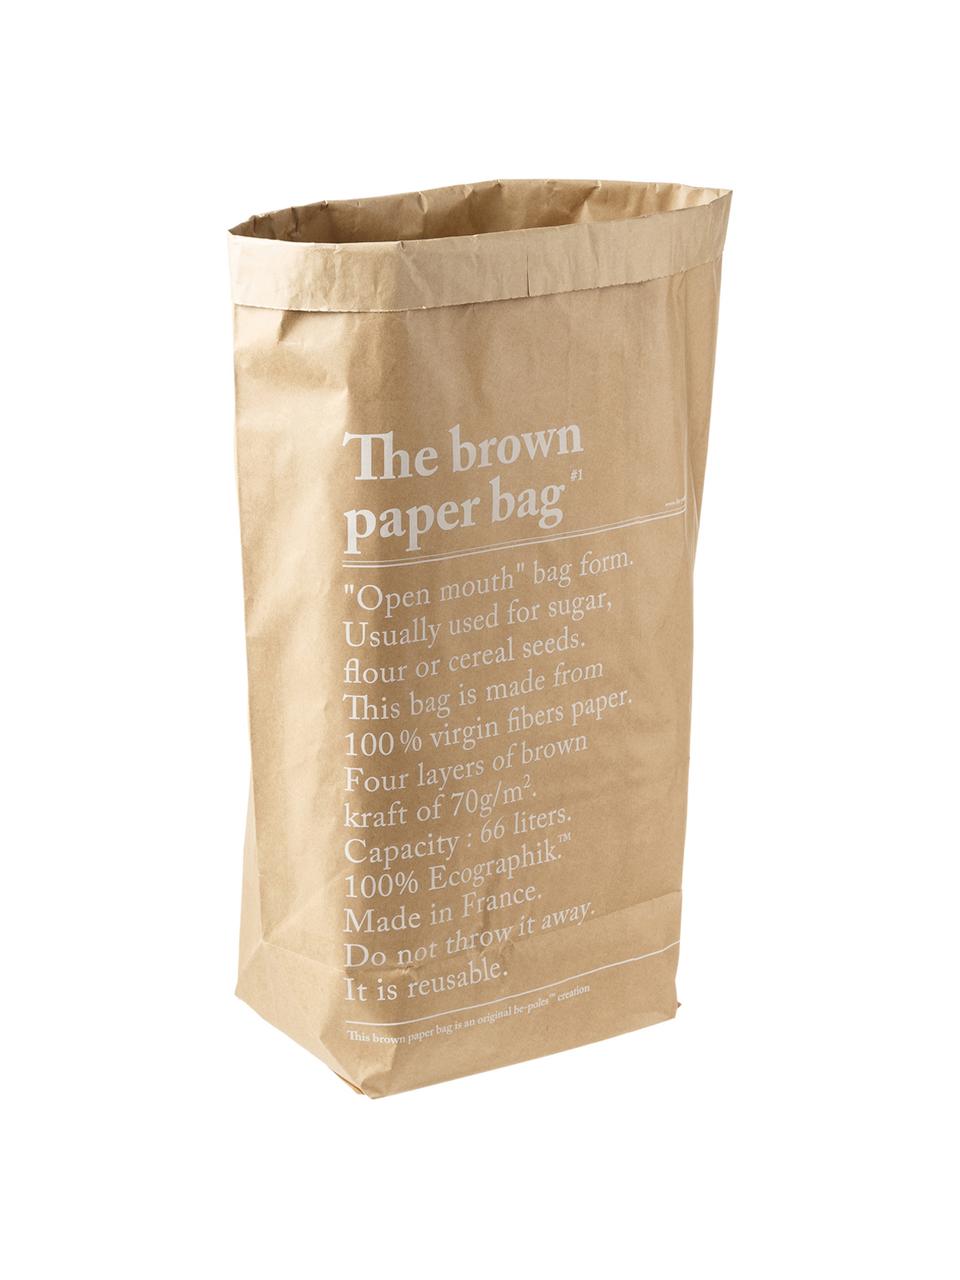 Borse di stoccaggio Le sac en papier, 2 pezzi, Carta in fibra vergine, Marrone, L 50 x A 69 cm